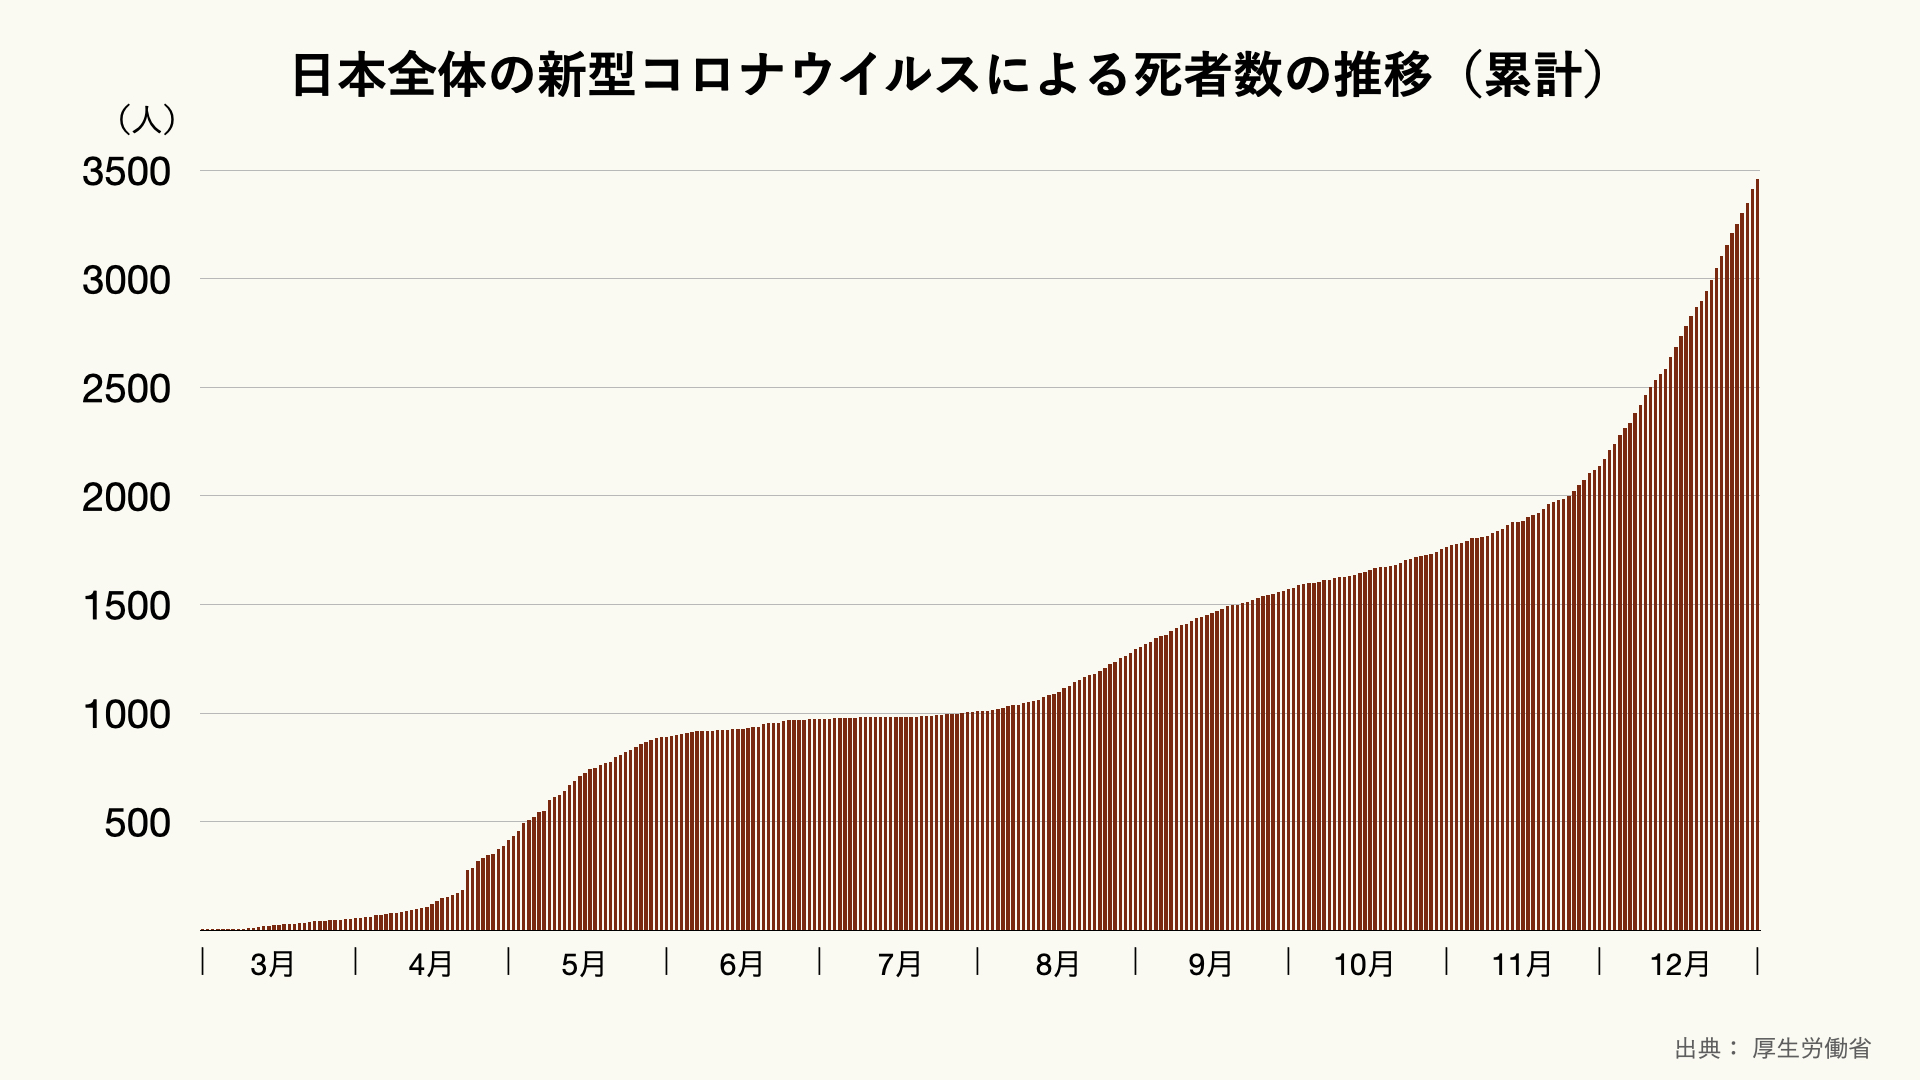 日本全体の新型コロナウイルスによる死者数の推移（累計）